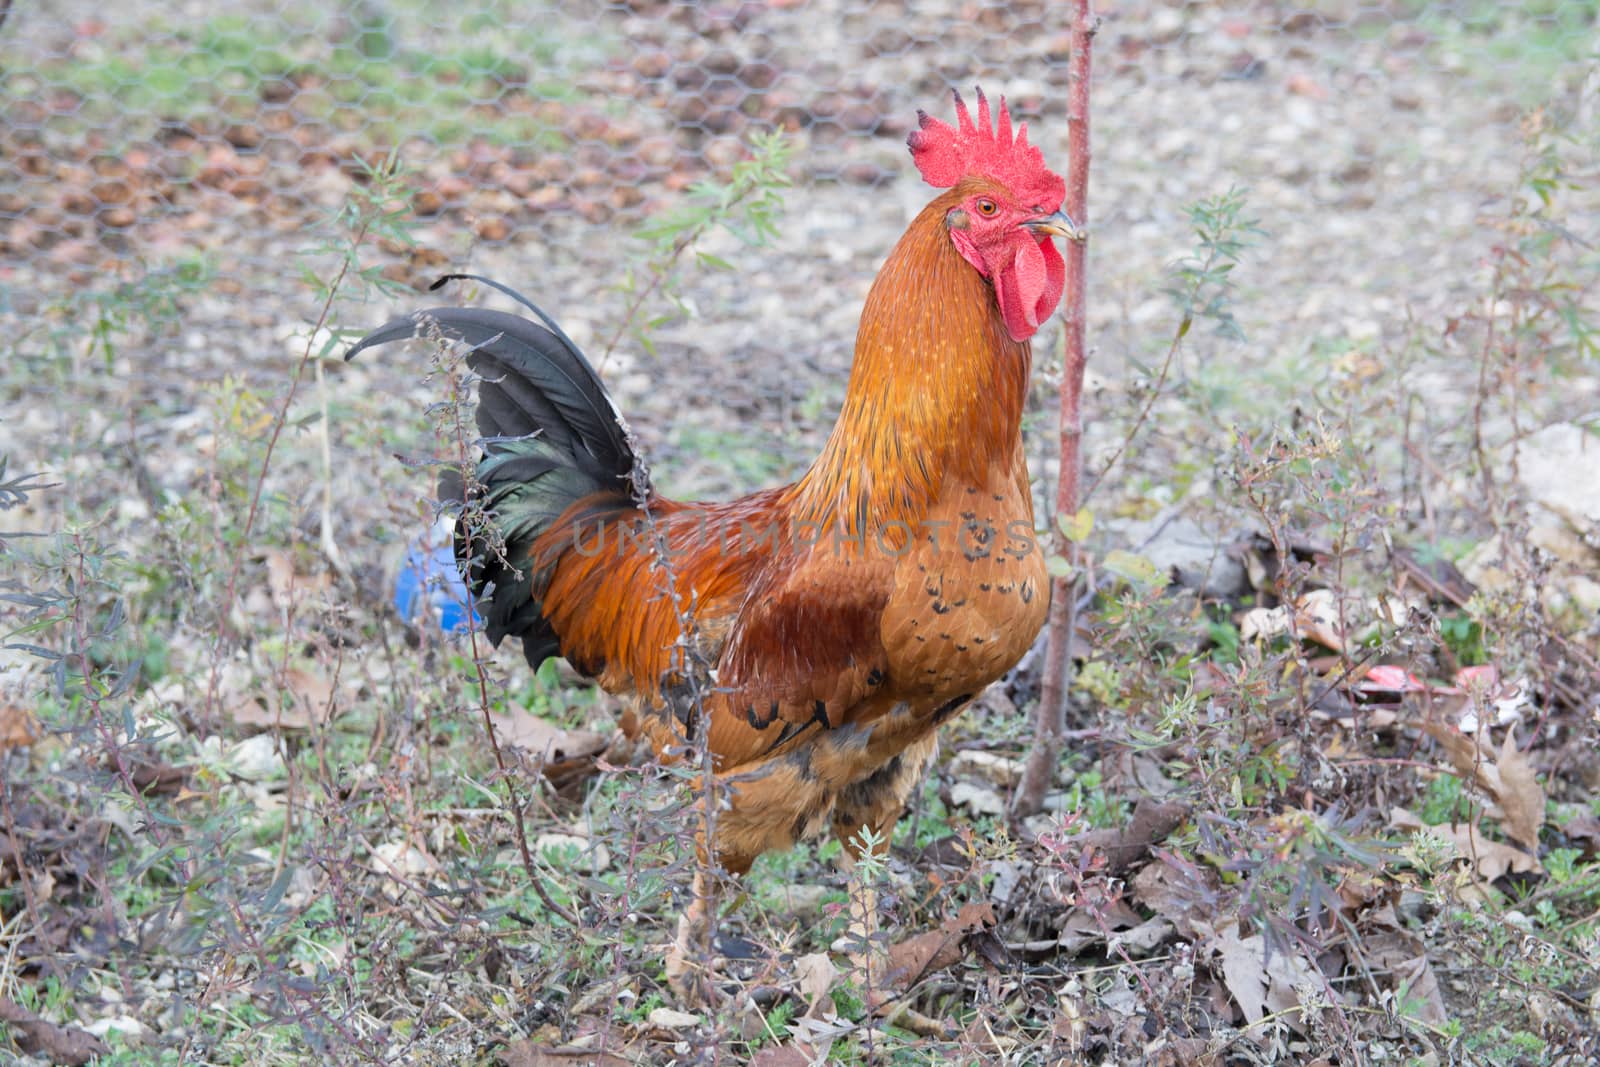 "Denizli" rooster by yebeka